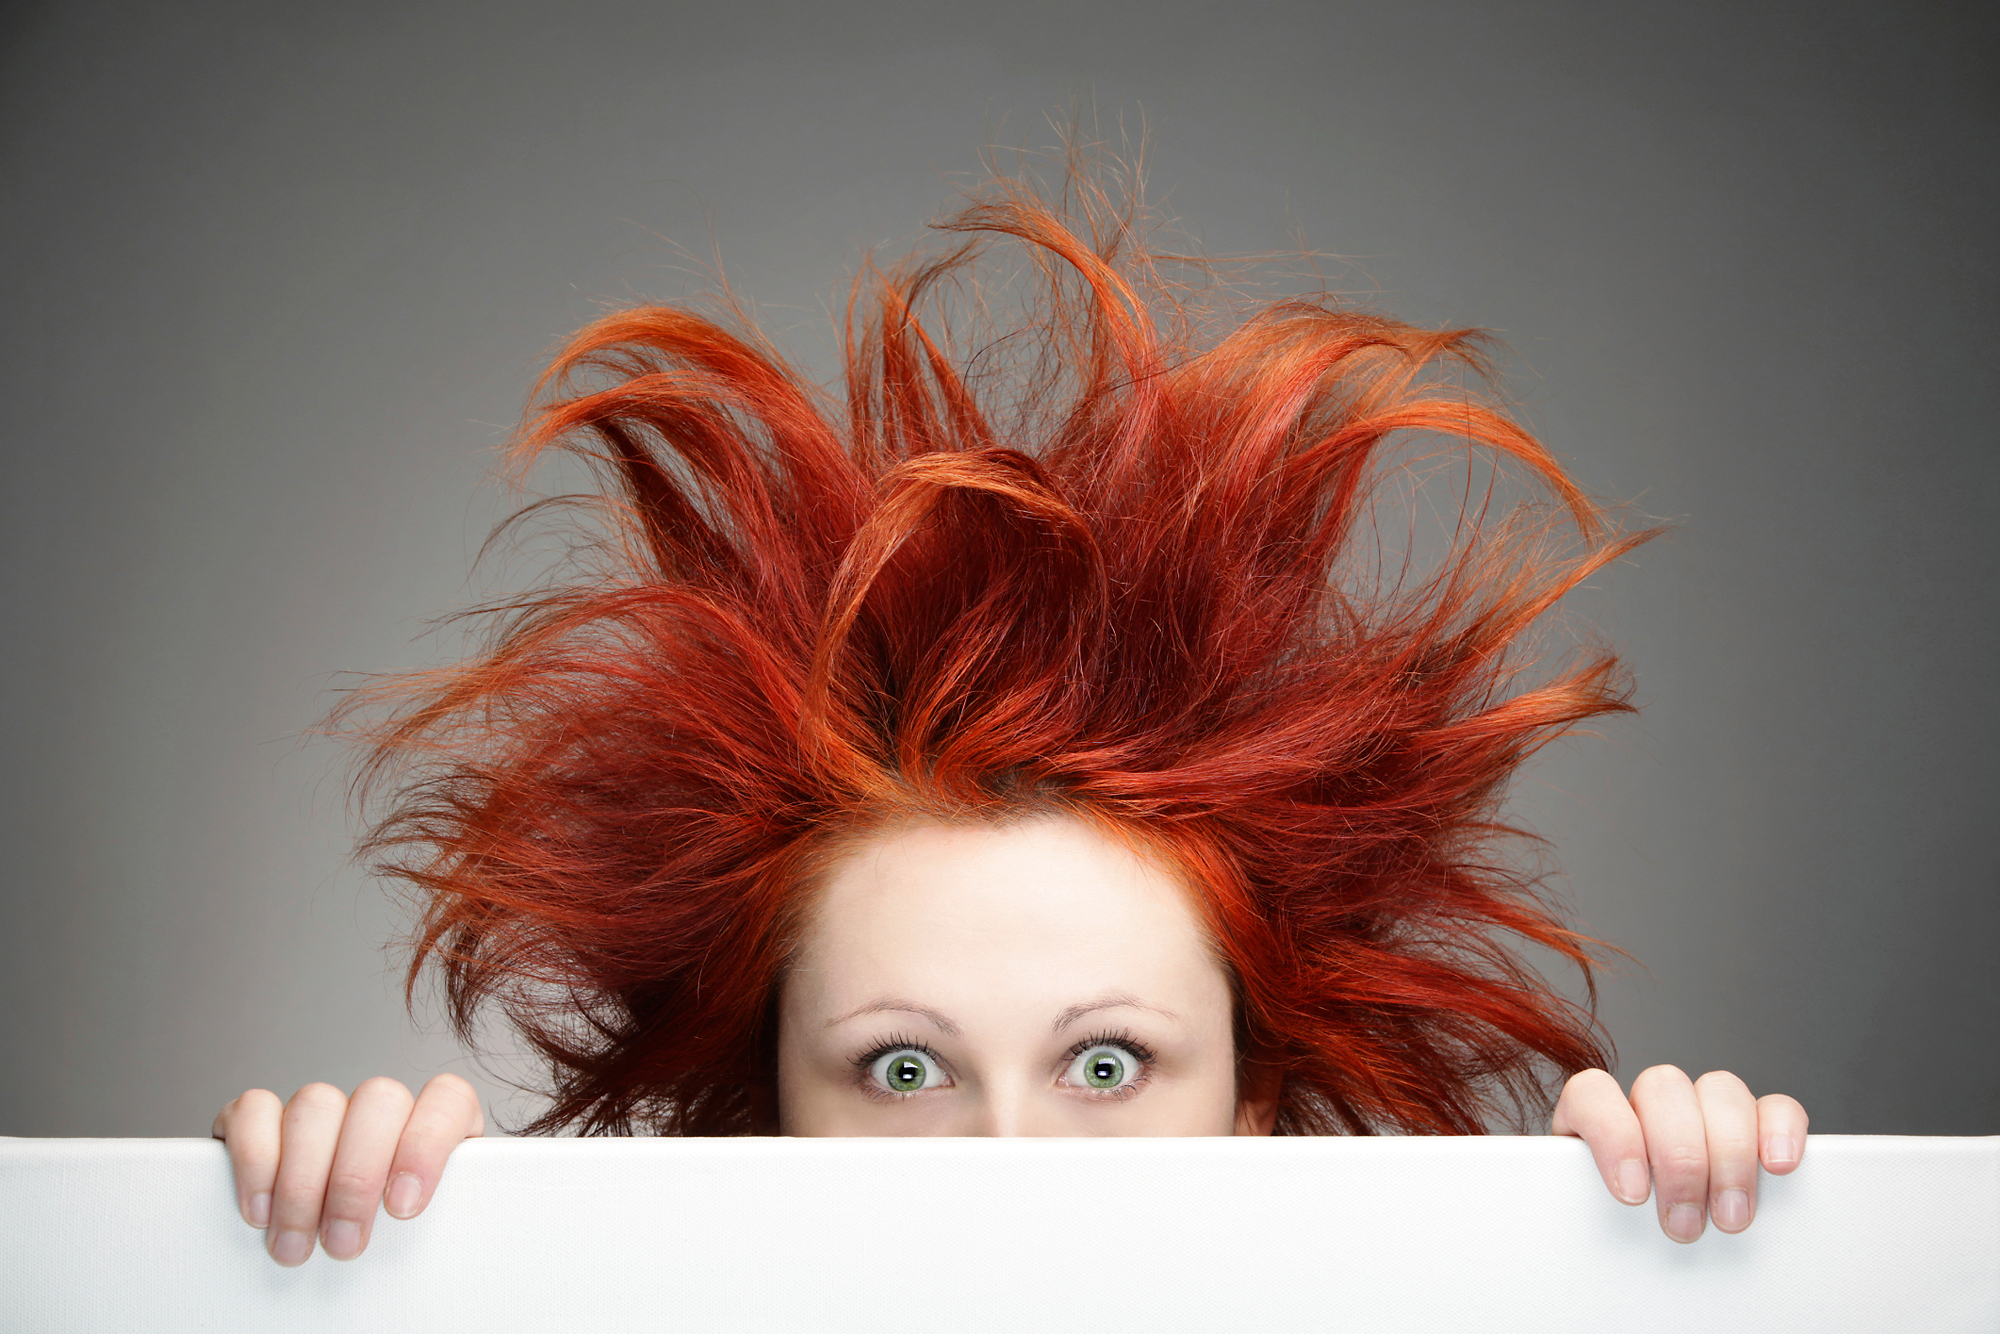 Астролог назвала брянцам самые неблагоприятные для стрижки волос дни